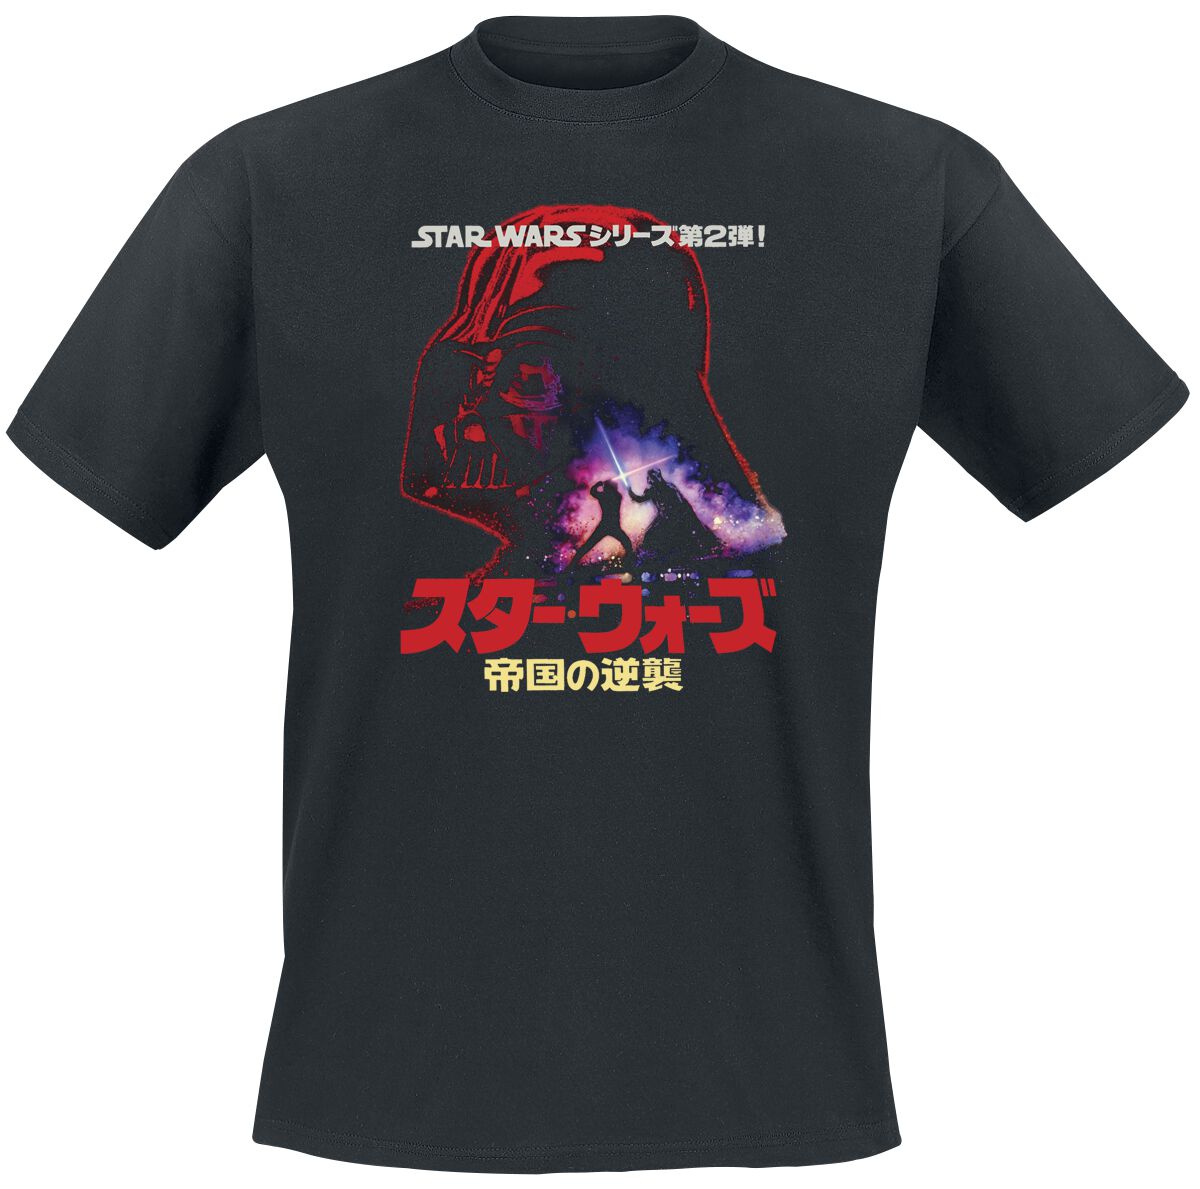 Star Wars Darth Vader - Poster T-Shirt schwarz in XL